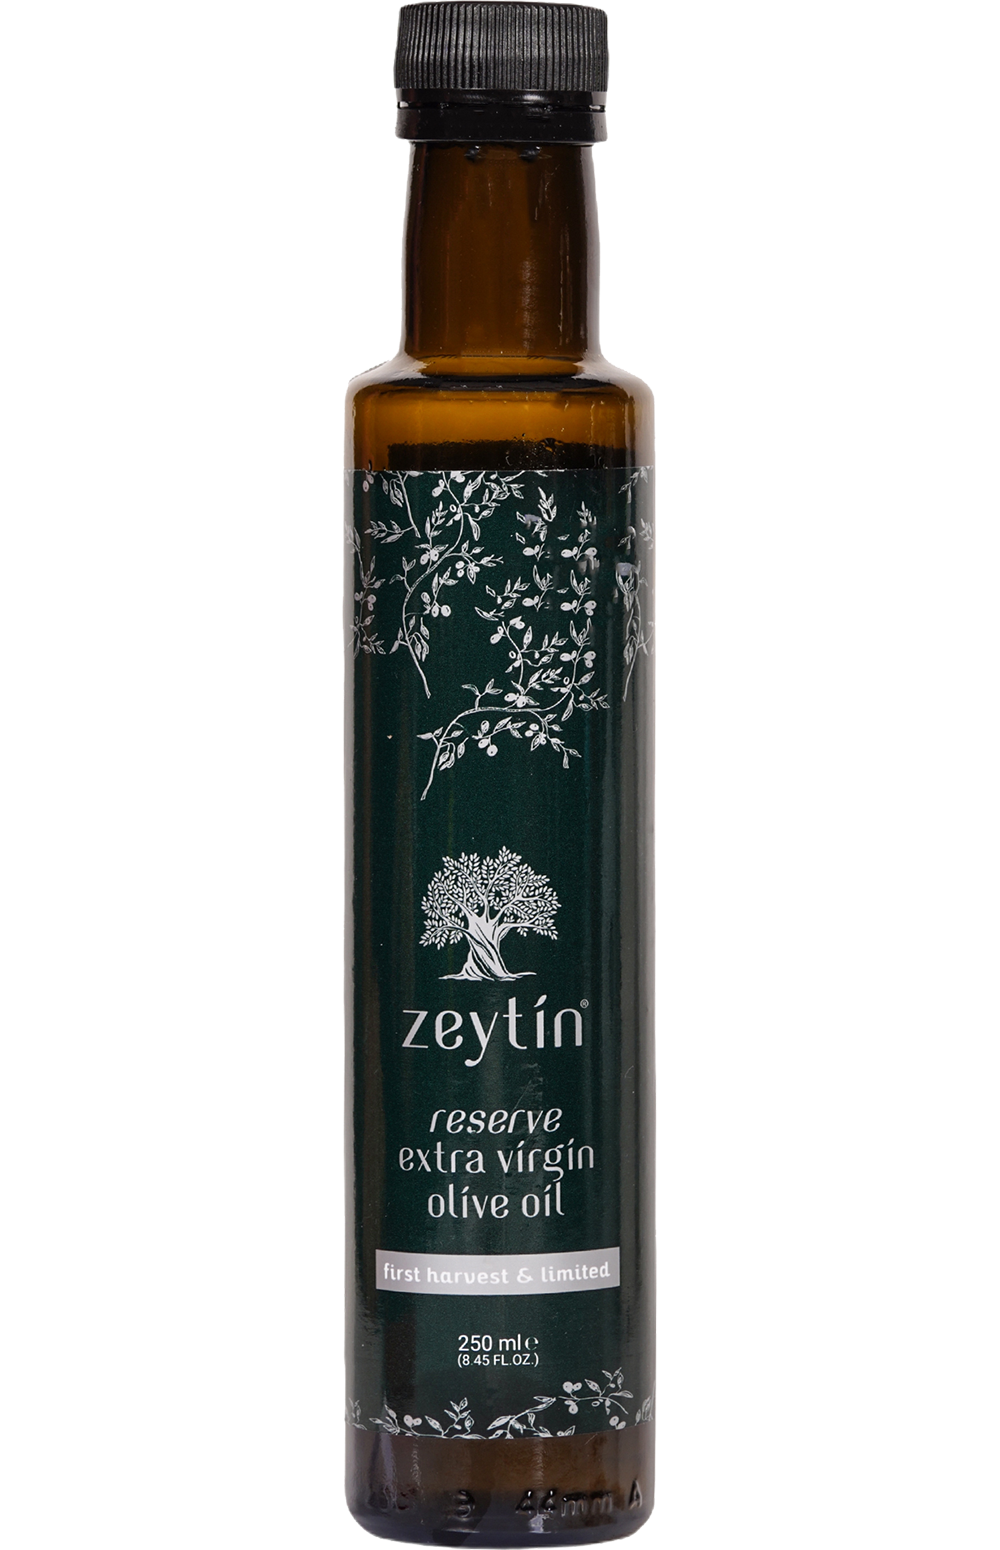 Zeytin Reserve